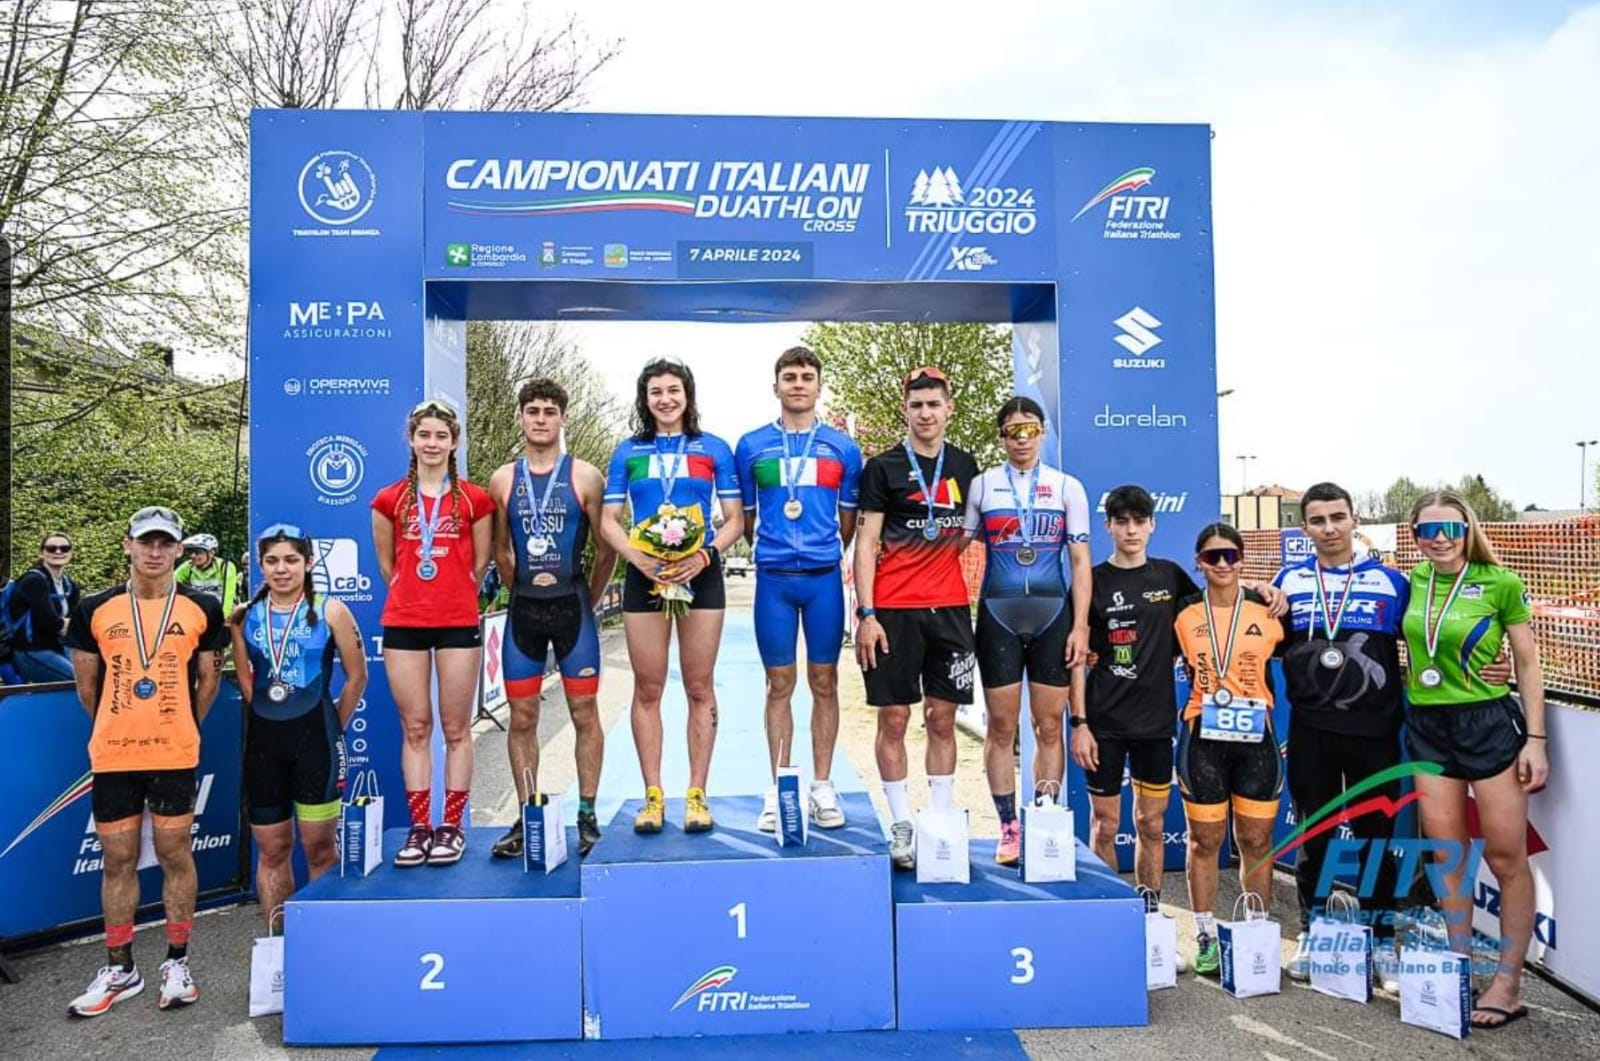 Campionati Italiani Duatlhon Cross di Triuggio